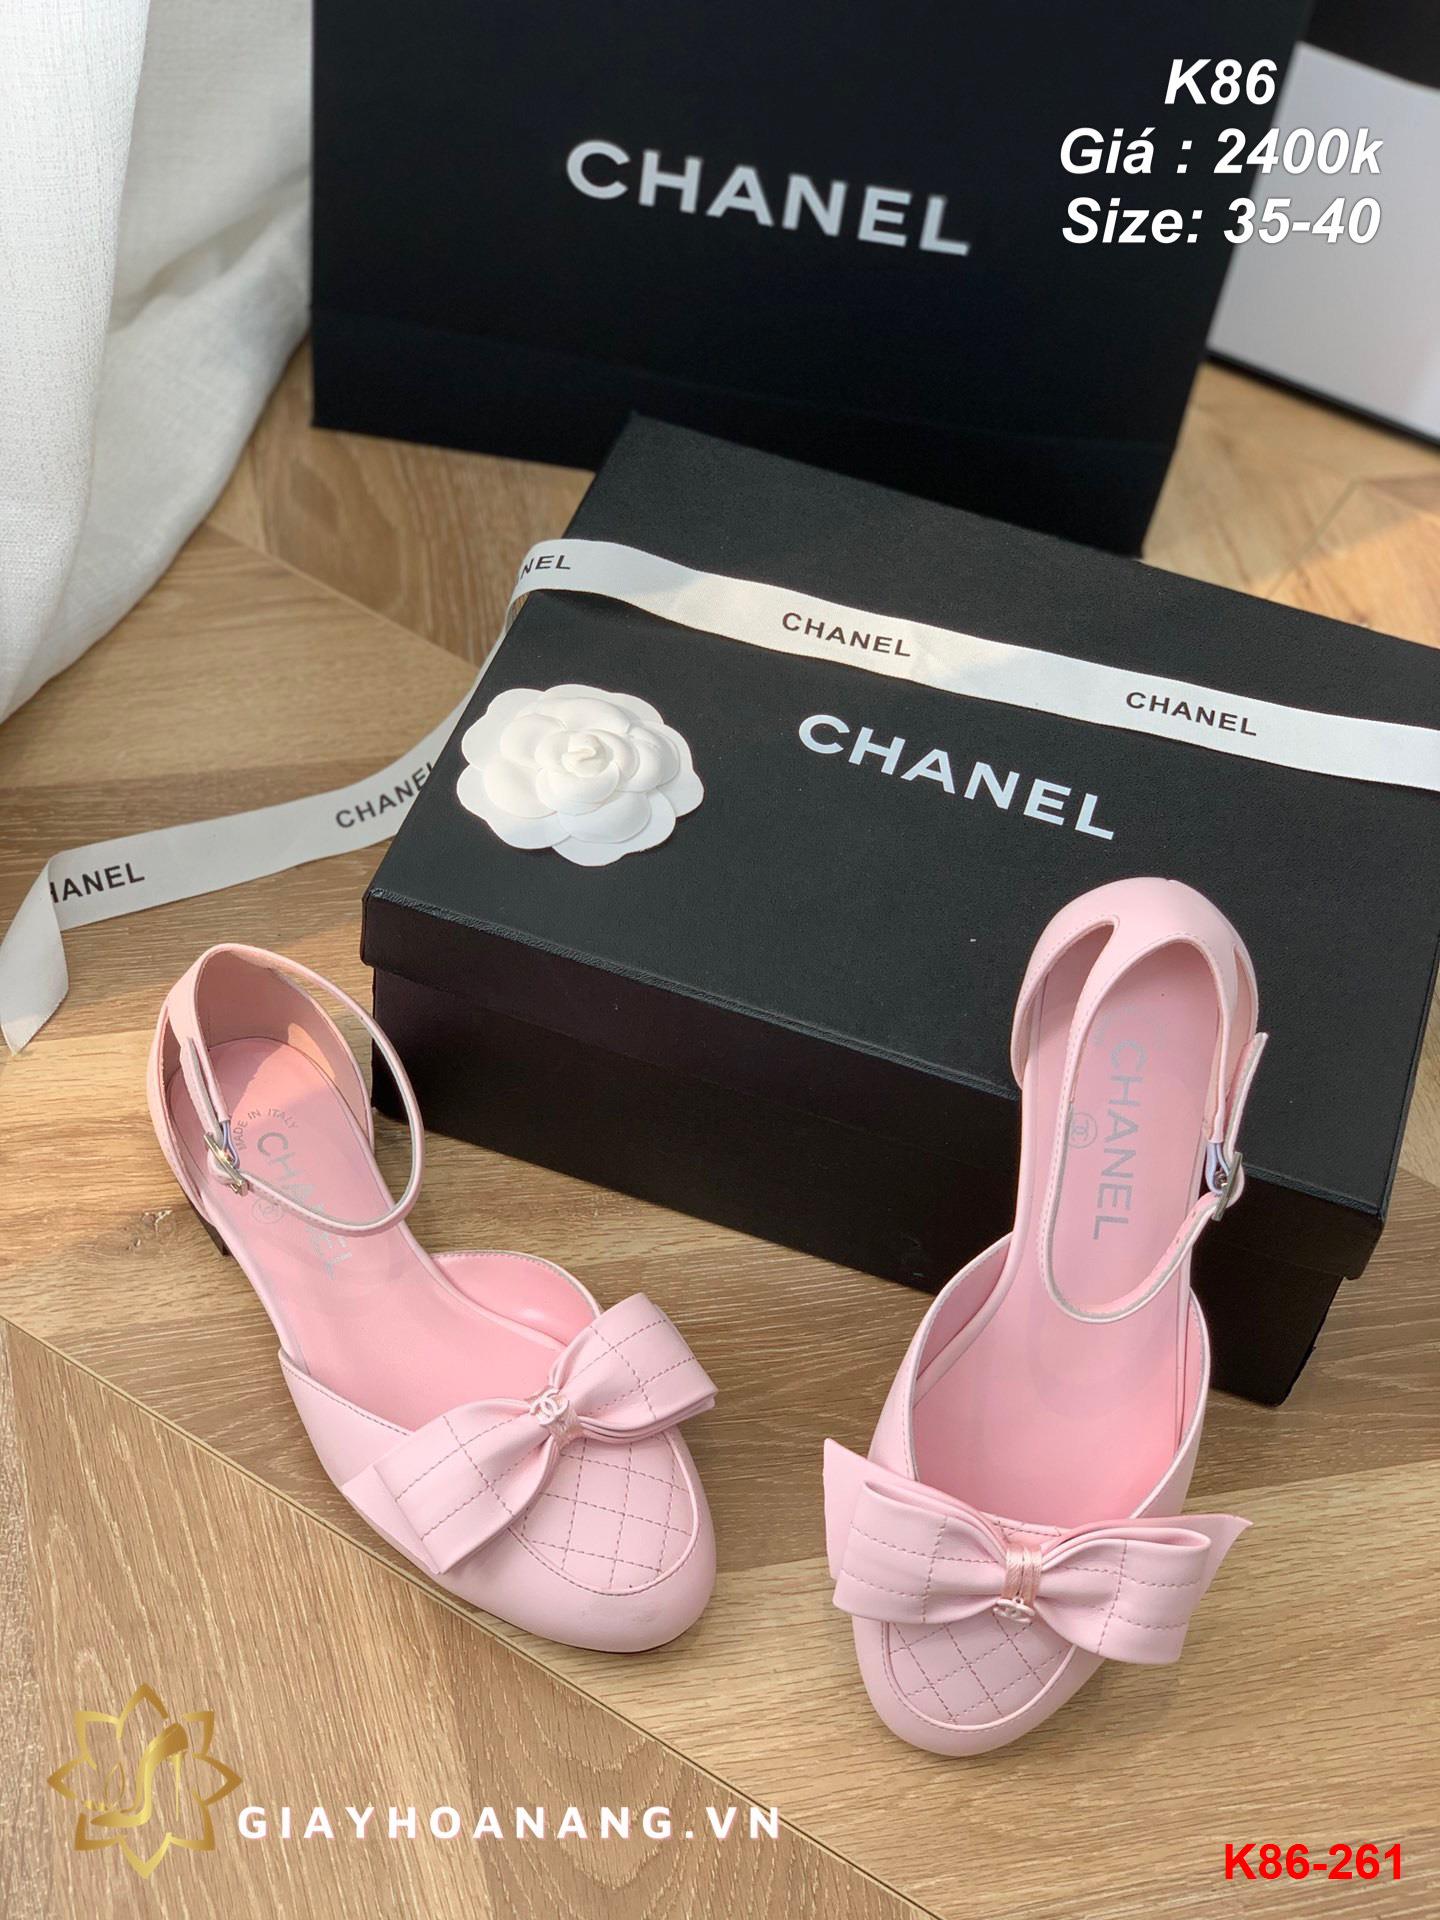 K86-261 Chanel sandal siêu cấp